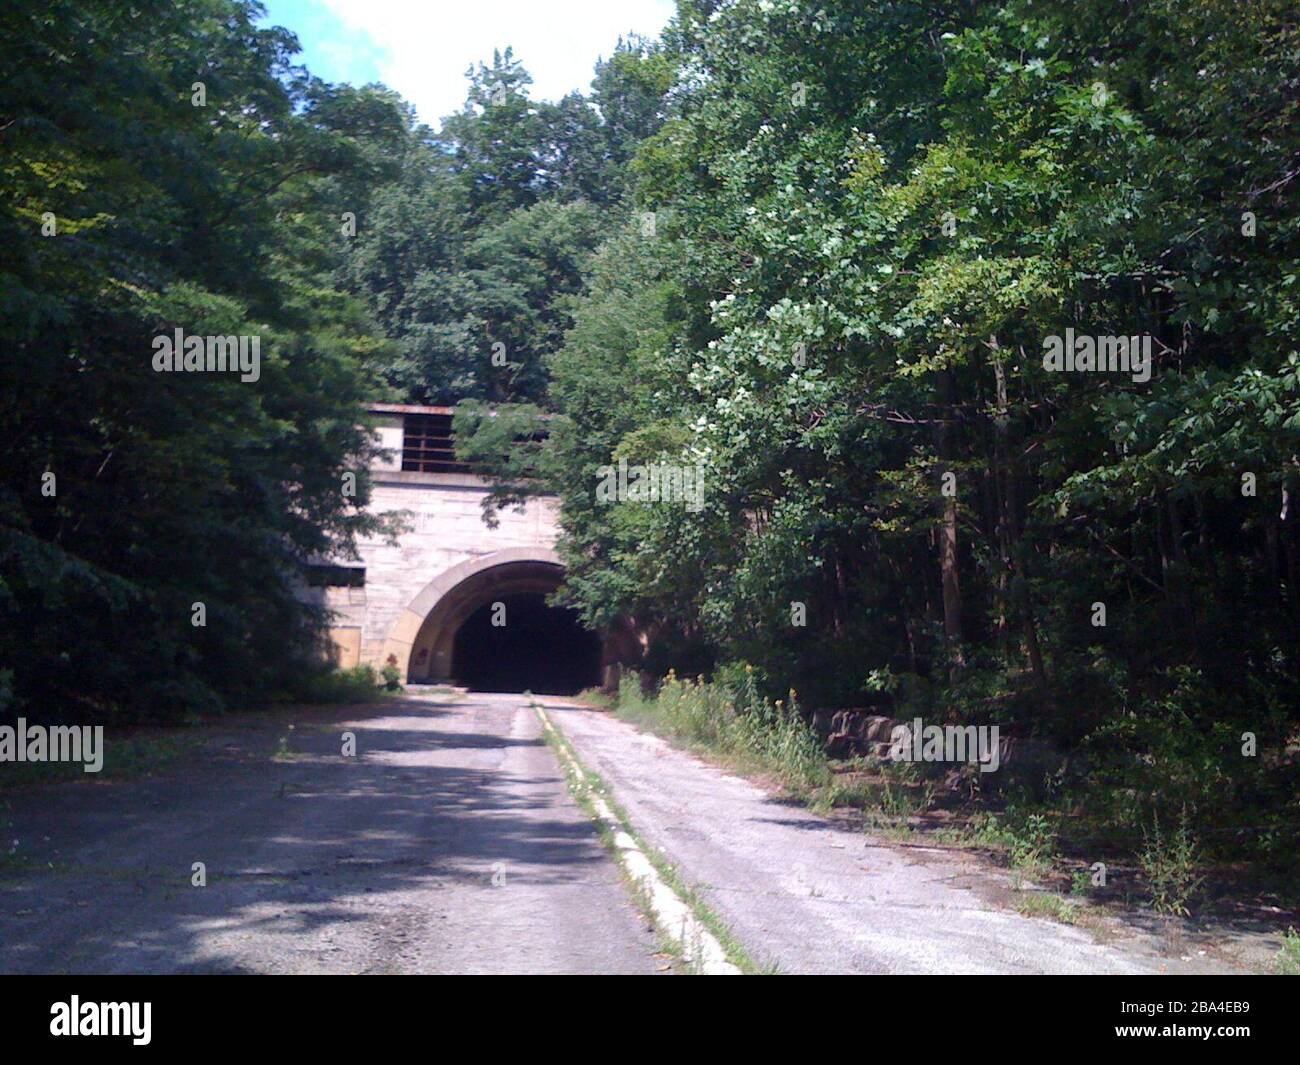 'Me tomé la imagen el 08/03/2009. También tomó 2006 imagen de Sideling Hill Tunnel.; 18 de febrero de 2012 21:49:47(UTC) (originalmente cargado en 2009-08-05 17:05:39); originalmente cargado en en en.wikipedia; originalmente cargado por Jgera5 (transferido por xnatedawgx); ' Foto de stock